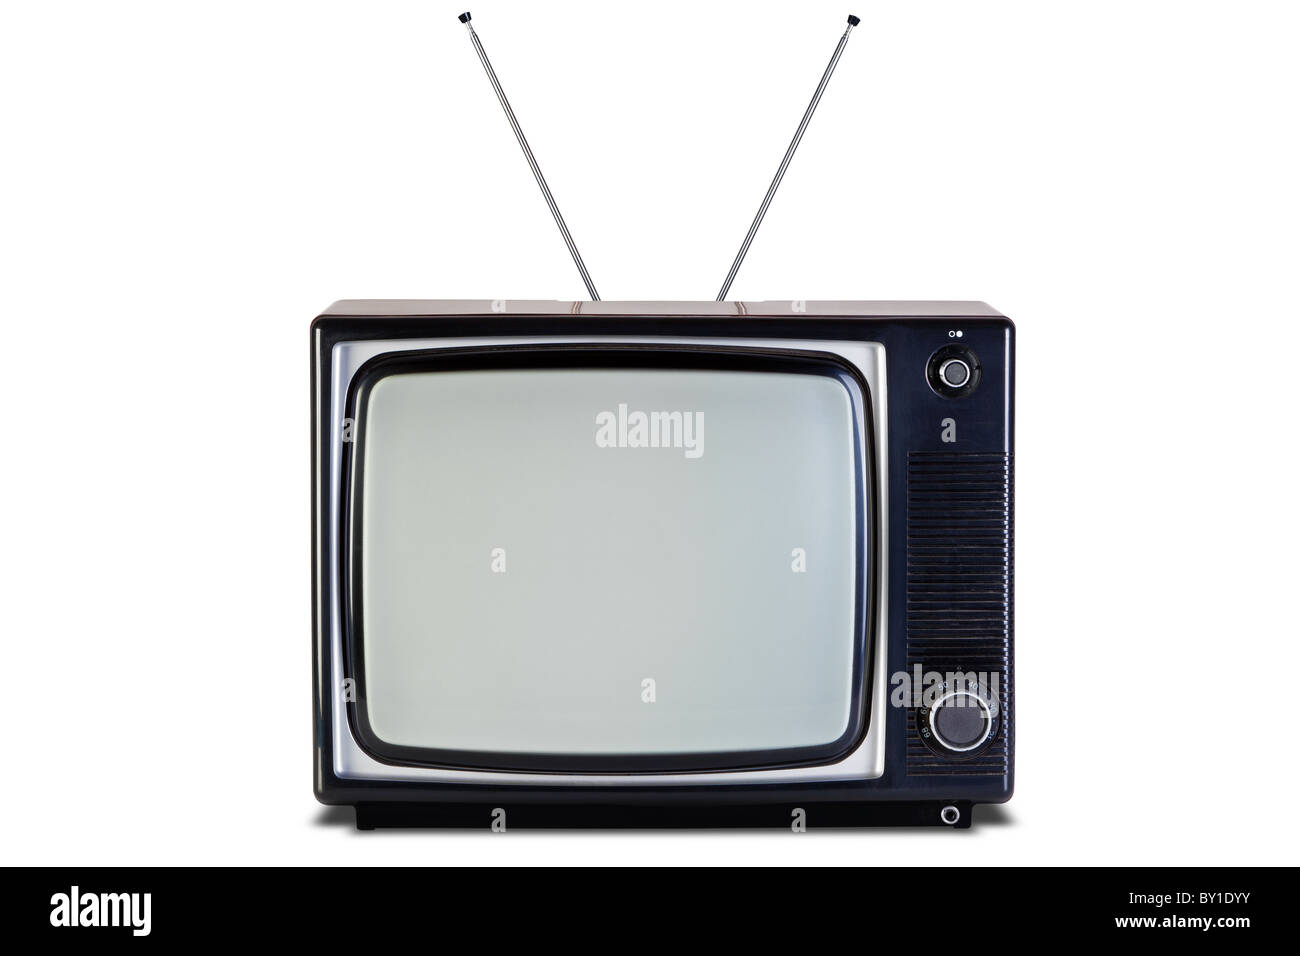 Ancien retro noir et blanc de la télévision, isolé sur un fond blanc, avec des chemins de détourage pour la télévision et l'écran. Banque D'Images